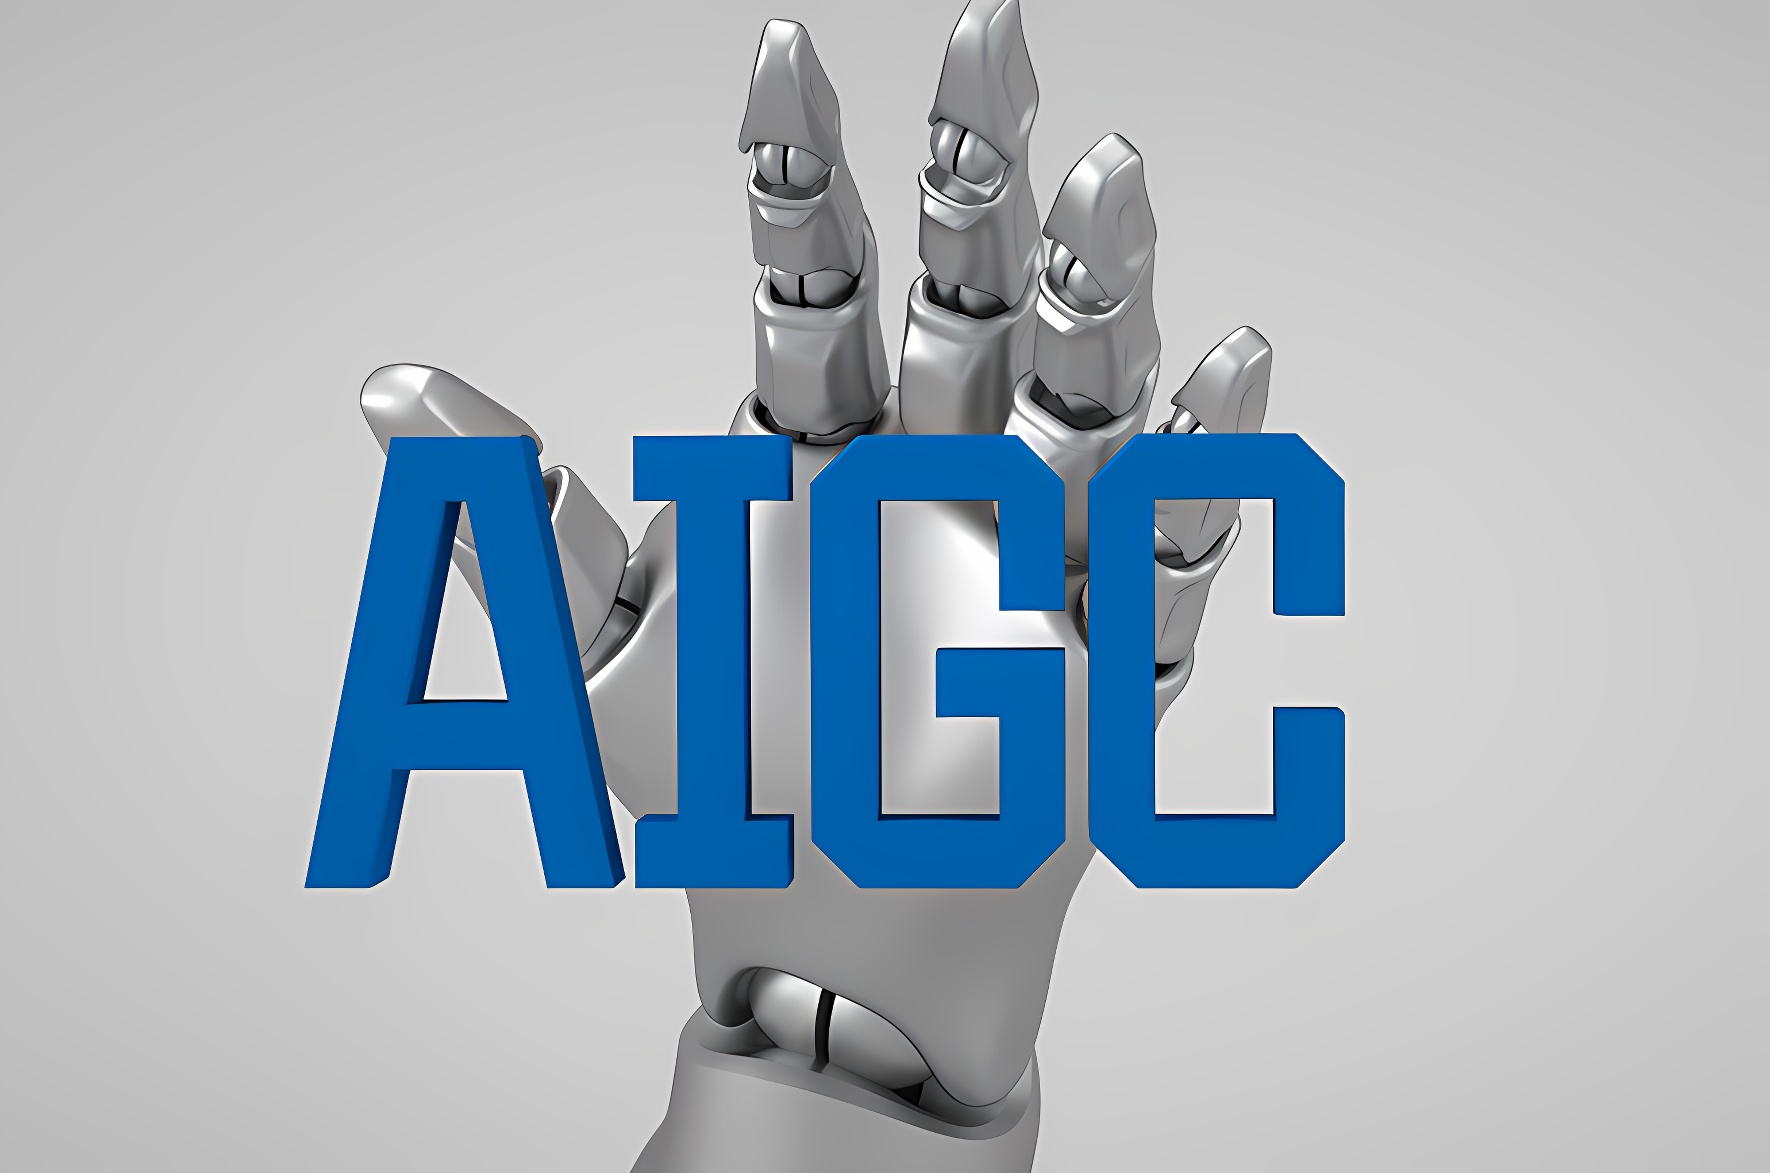 这是一张图像，展示了一个银色的机器人手指触碰着蓝色的“AIGC”字样，背景为单一的灰色调。